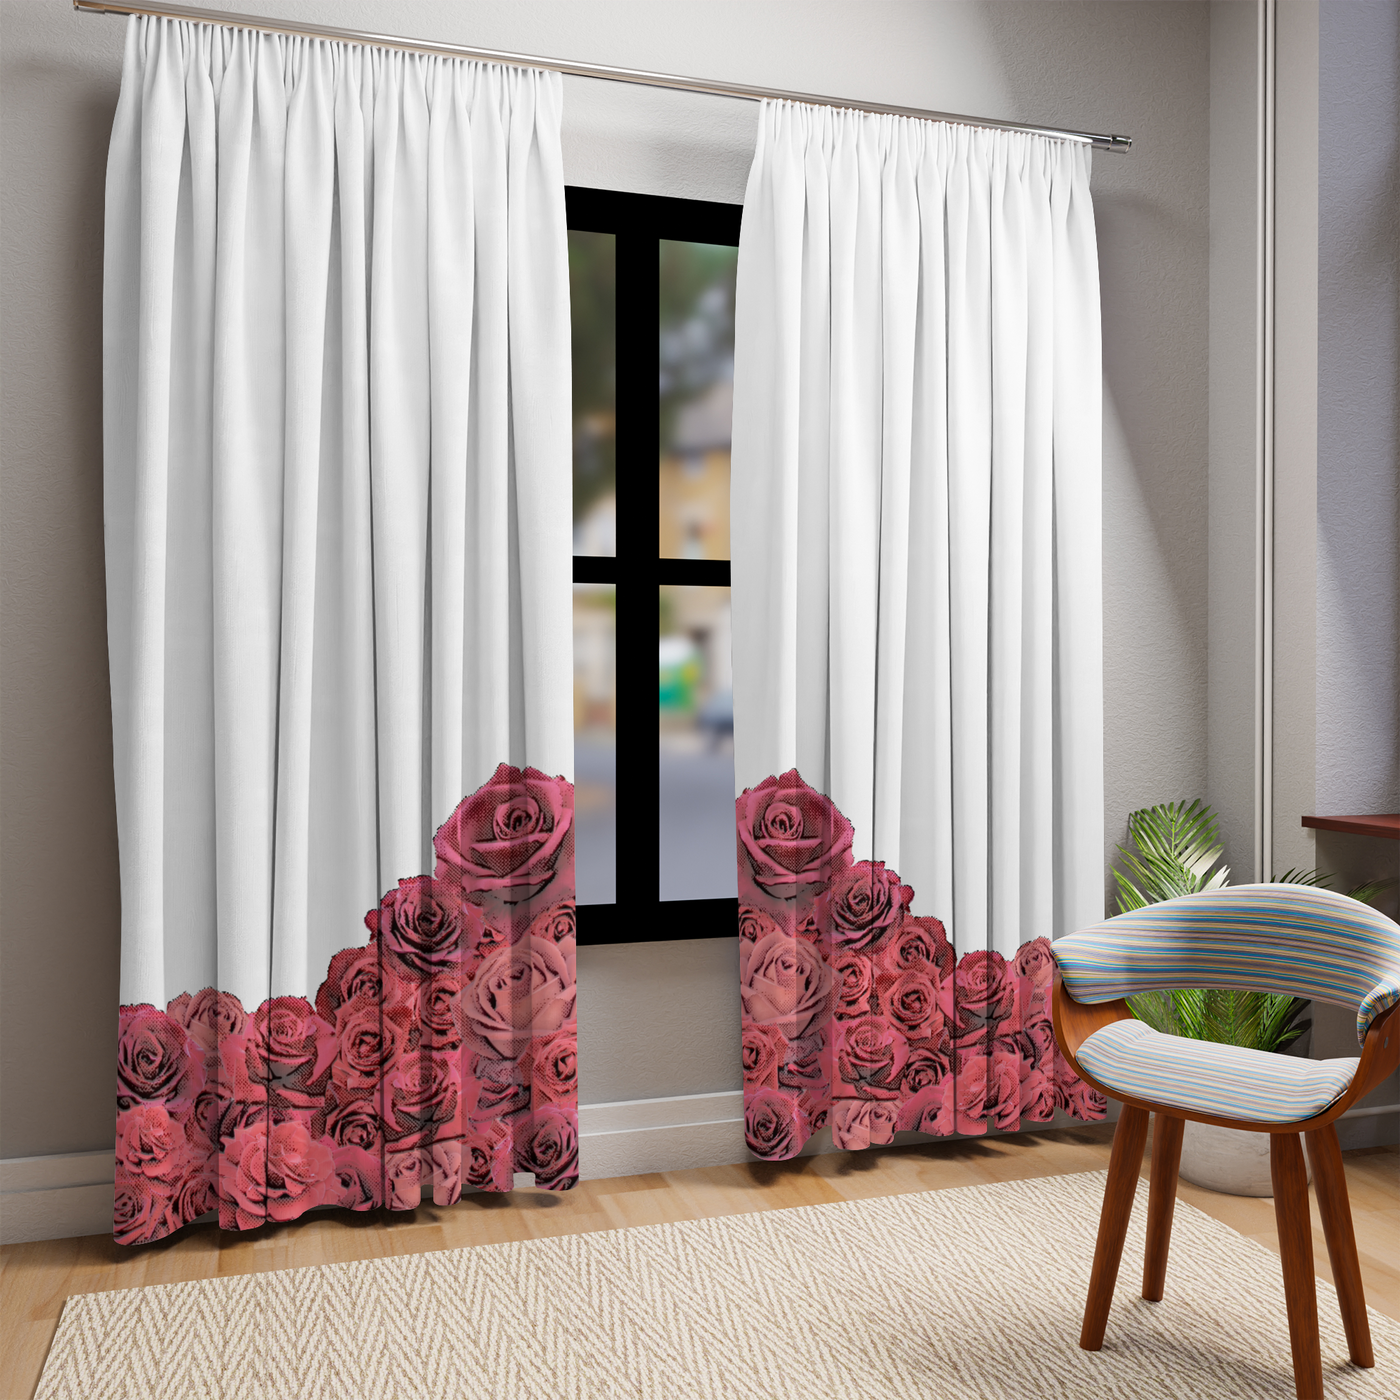 Shojo curtains, roses